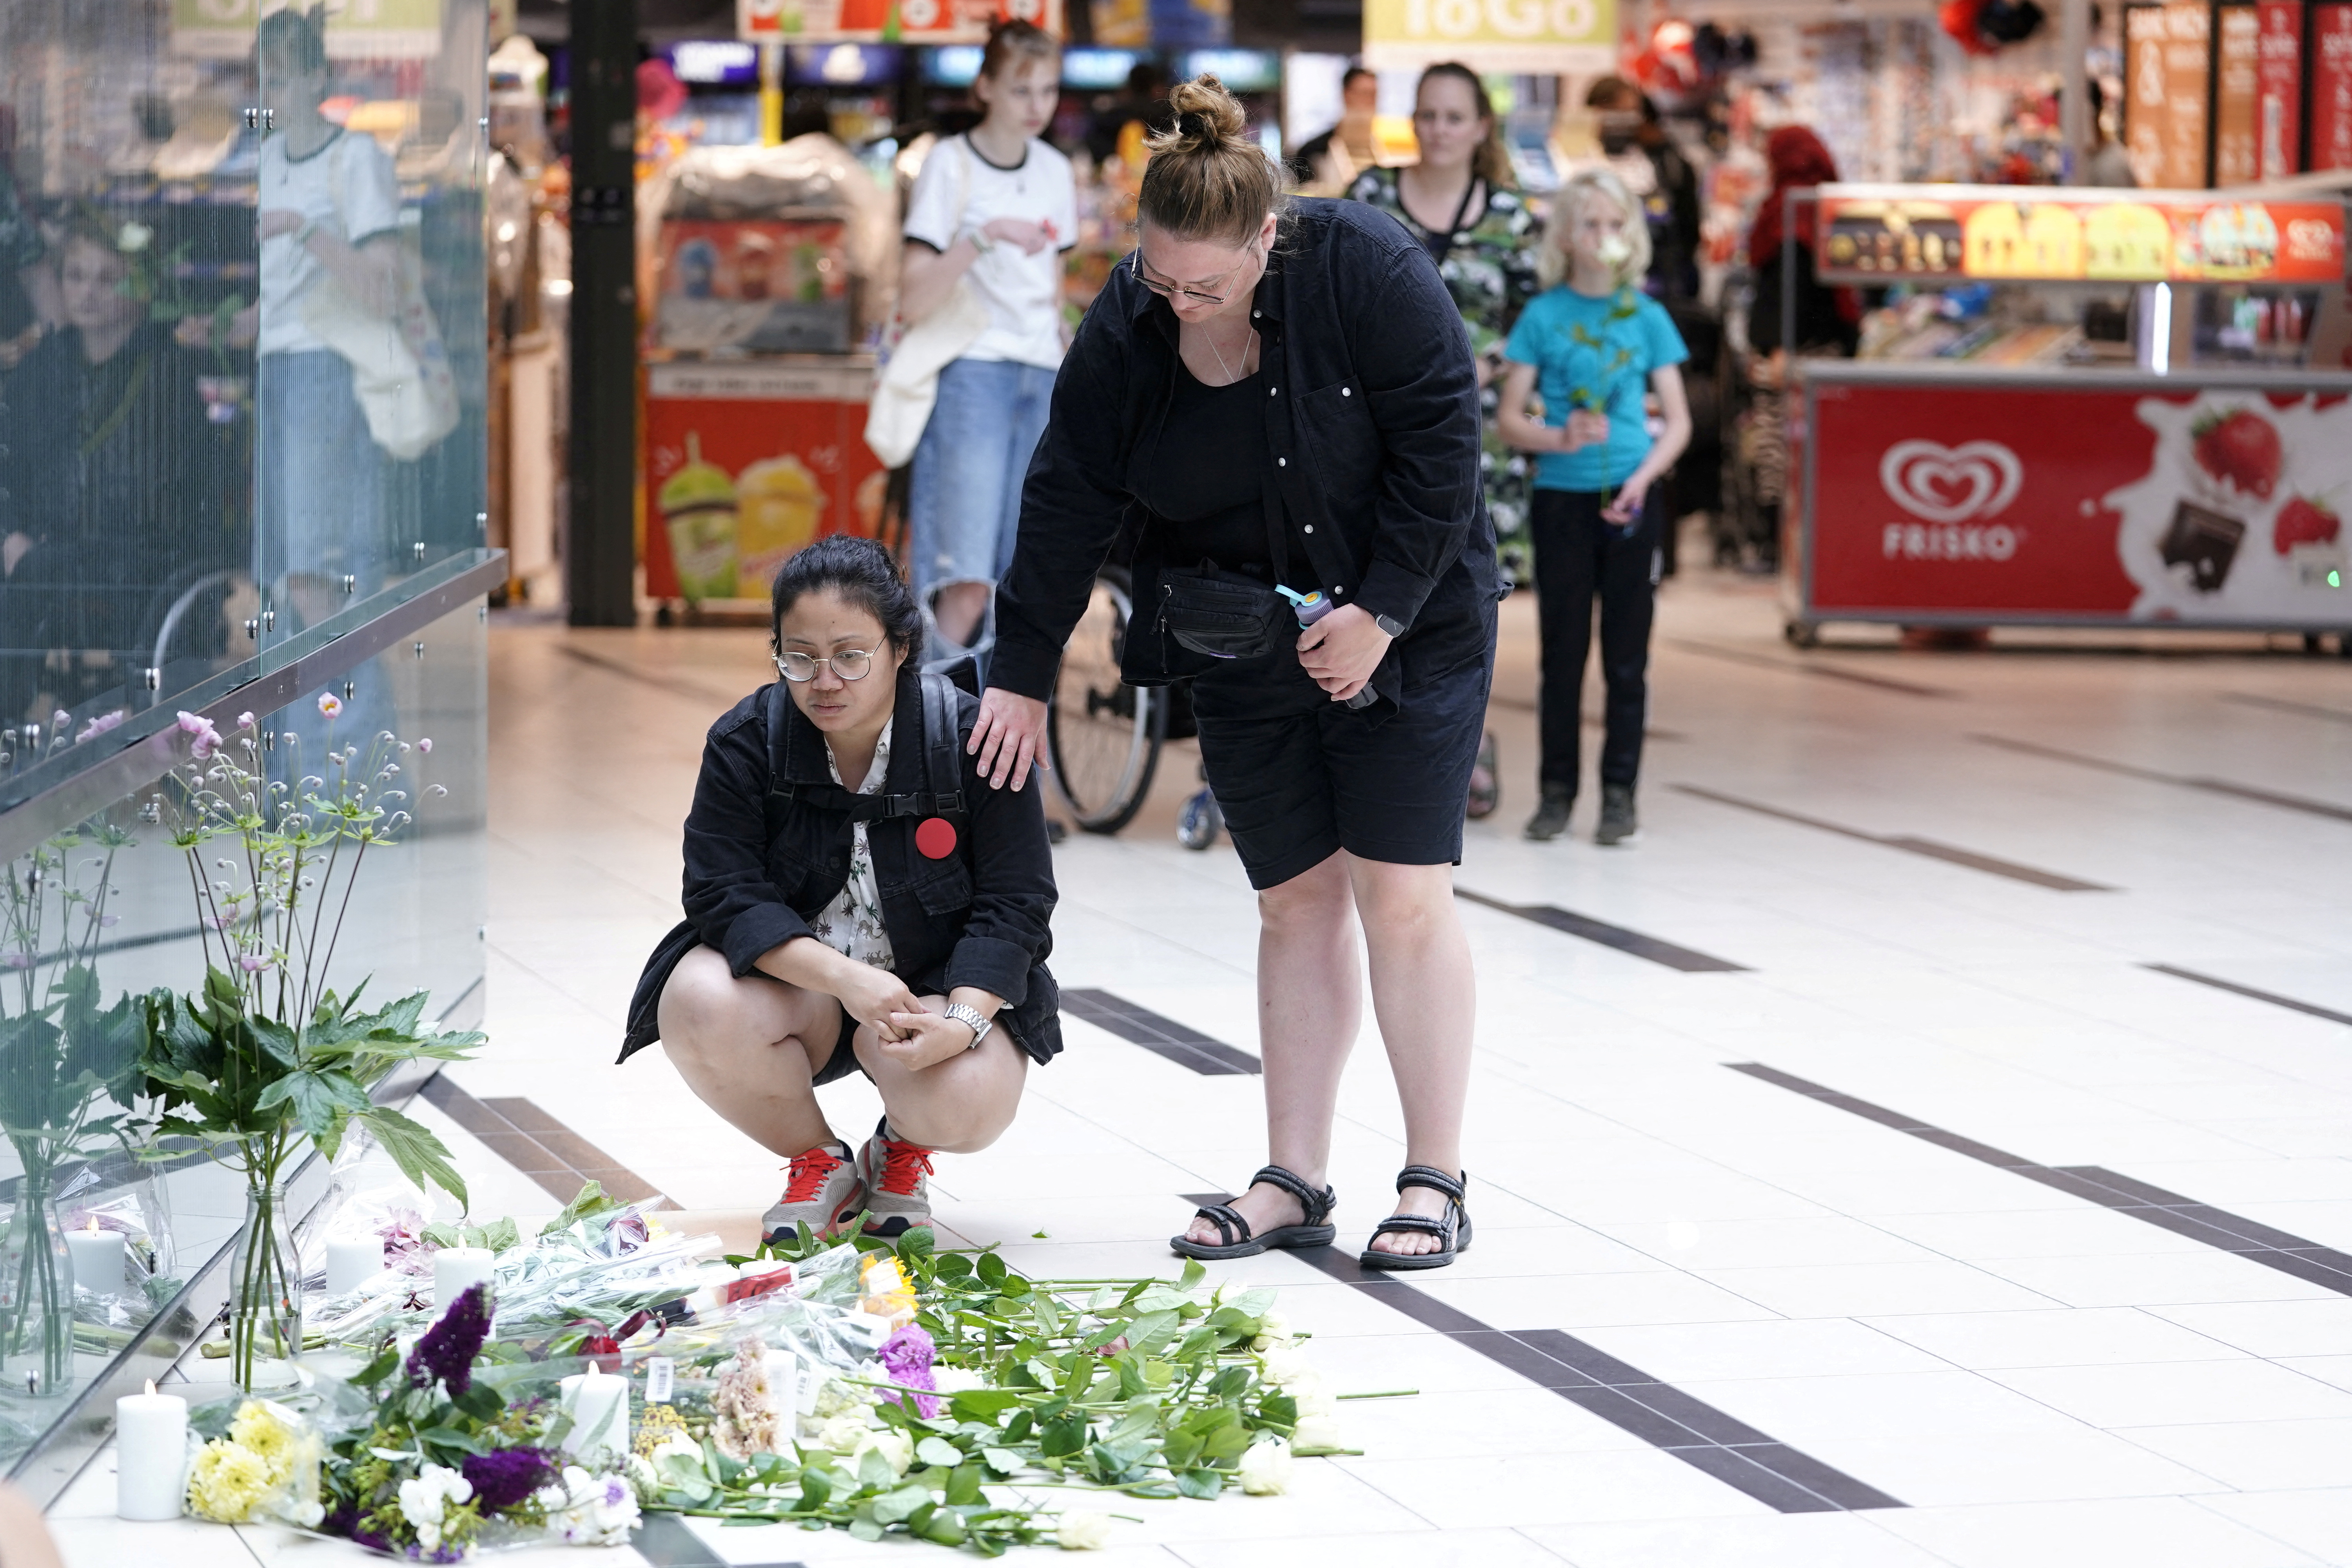 Shopping center Field's reopens following last week's shooting, in Copenhagen